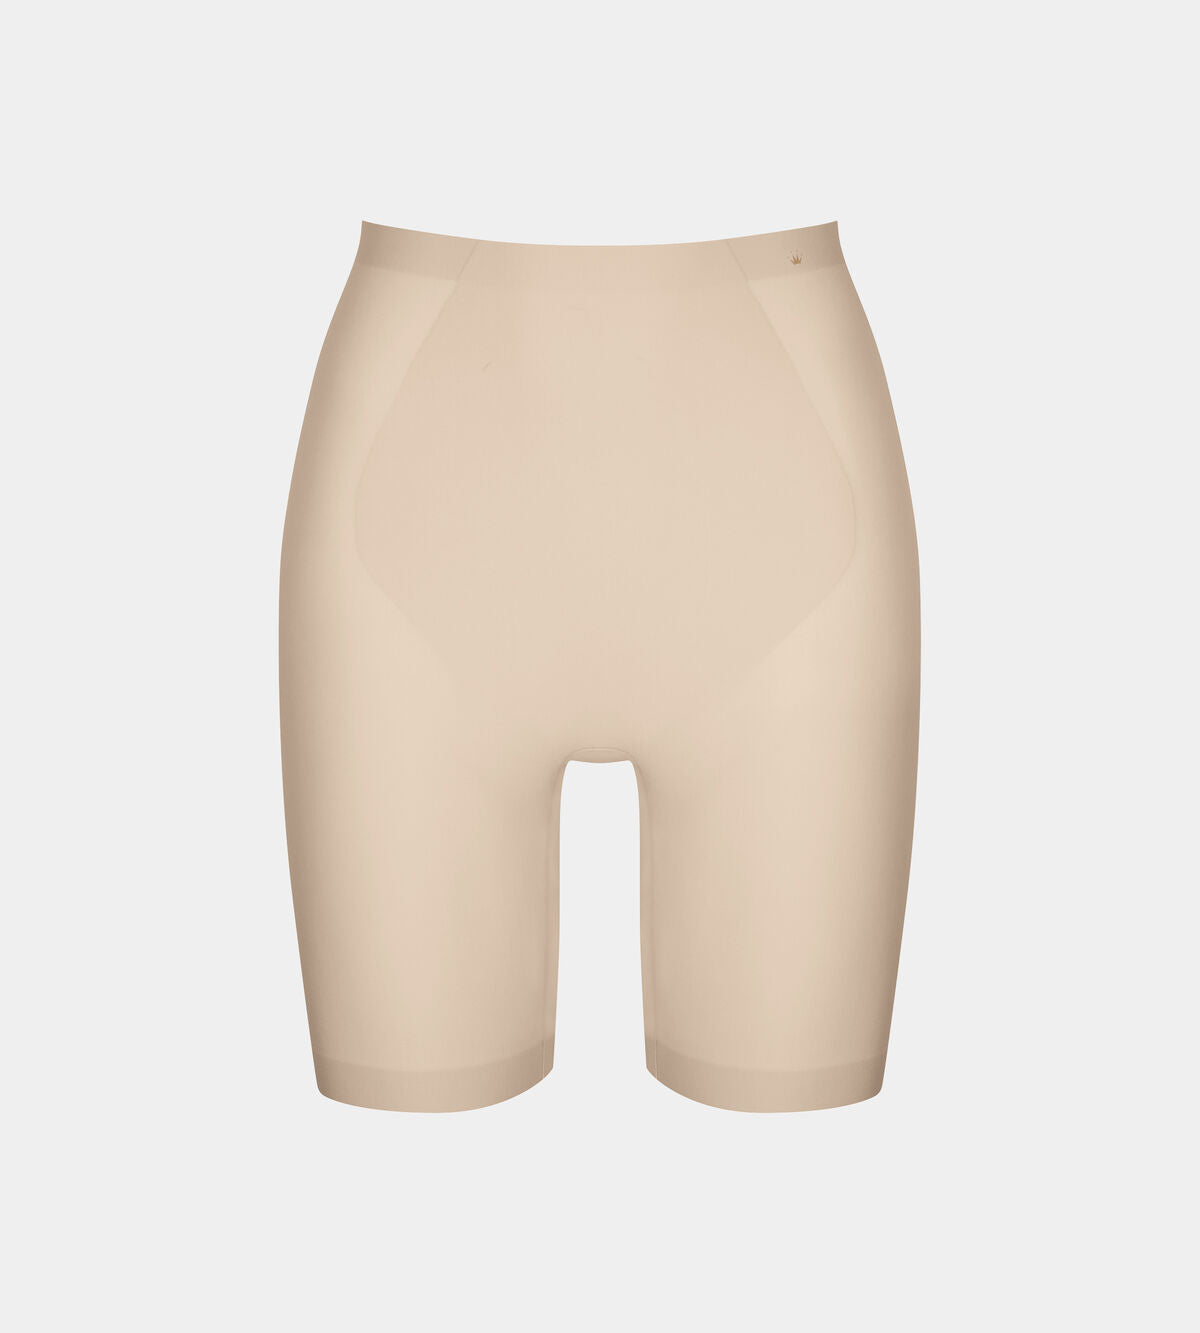 Faja pantalón INVISIBLE Triumph Medium Shaping Series Panty L